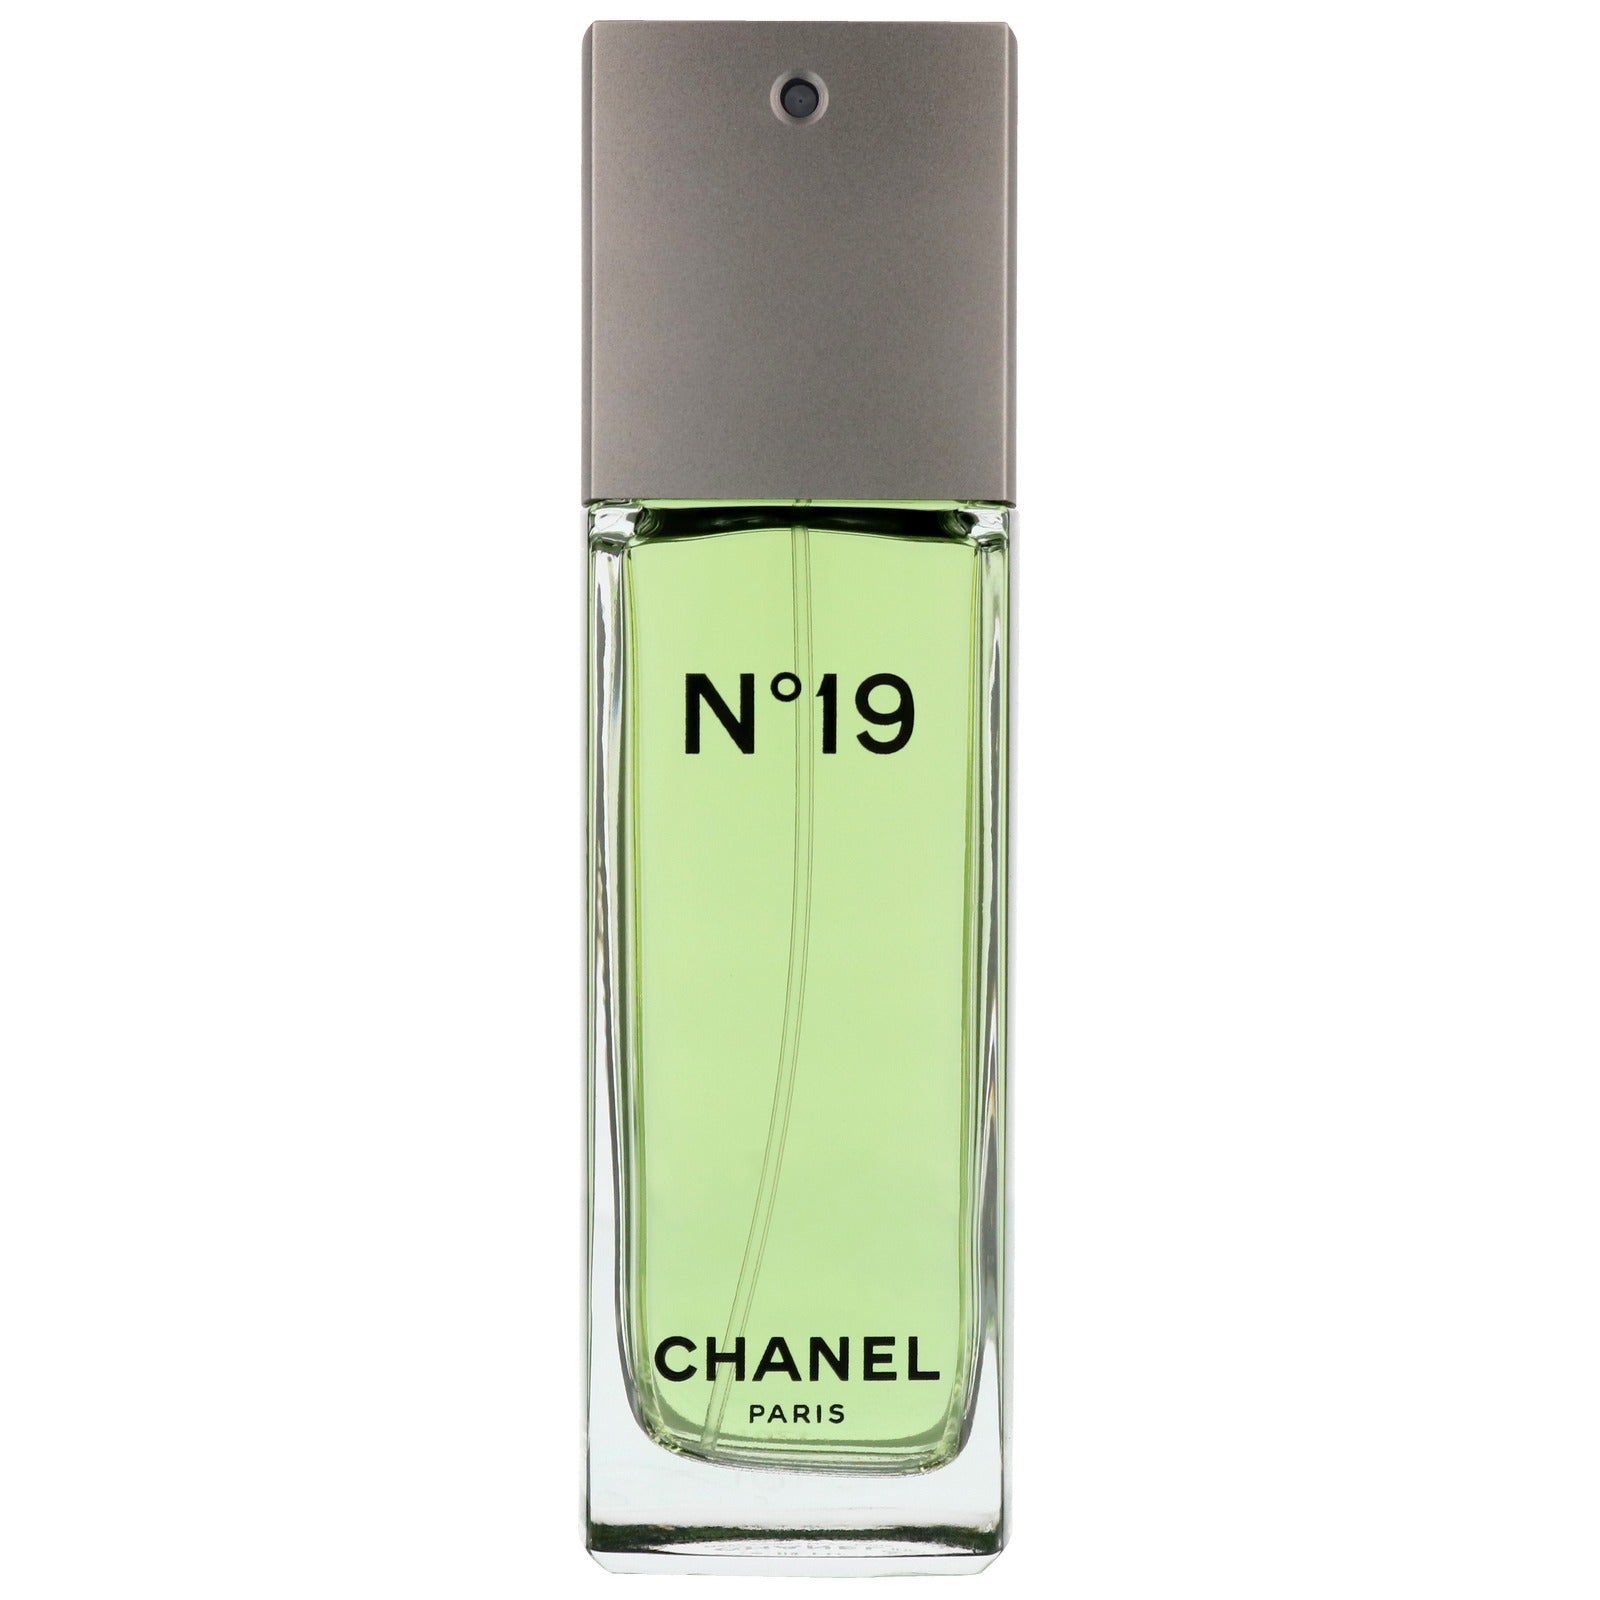 Chanel N19 Edt For Women 100Ml - Allurebeautypk